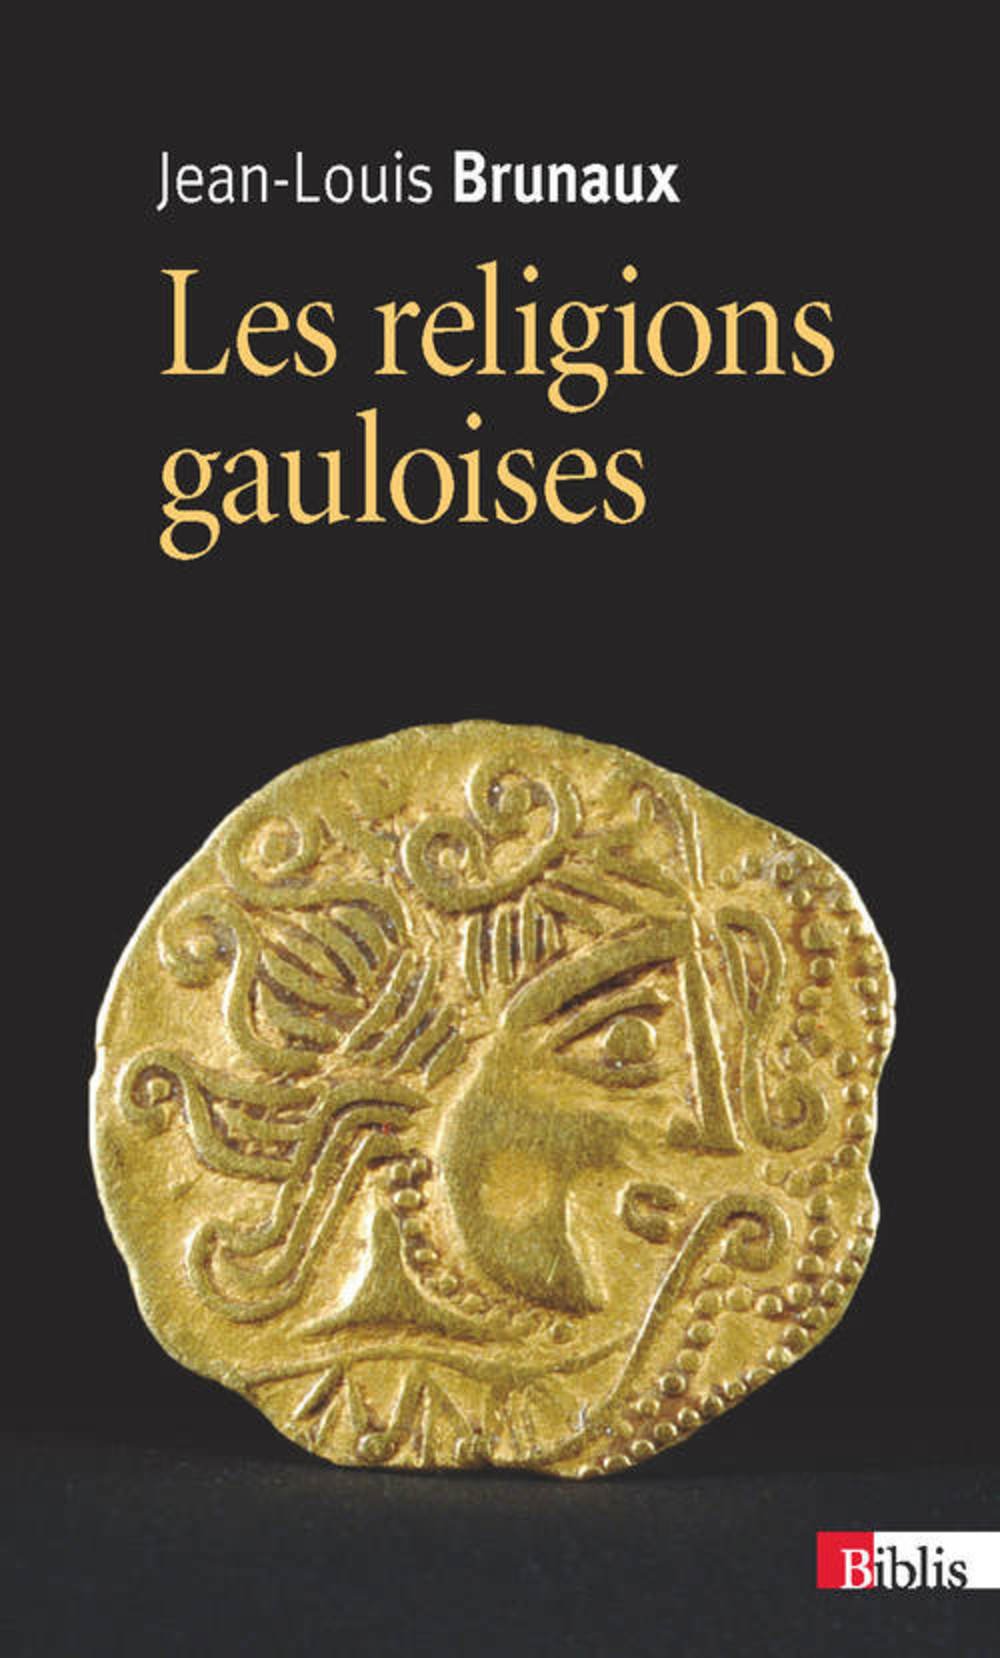 Les religions gauloises (Ve-Ier siècles av. J.-C.), 2020, 469 p.